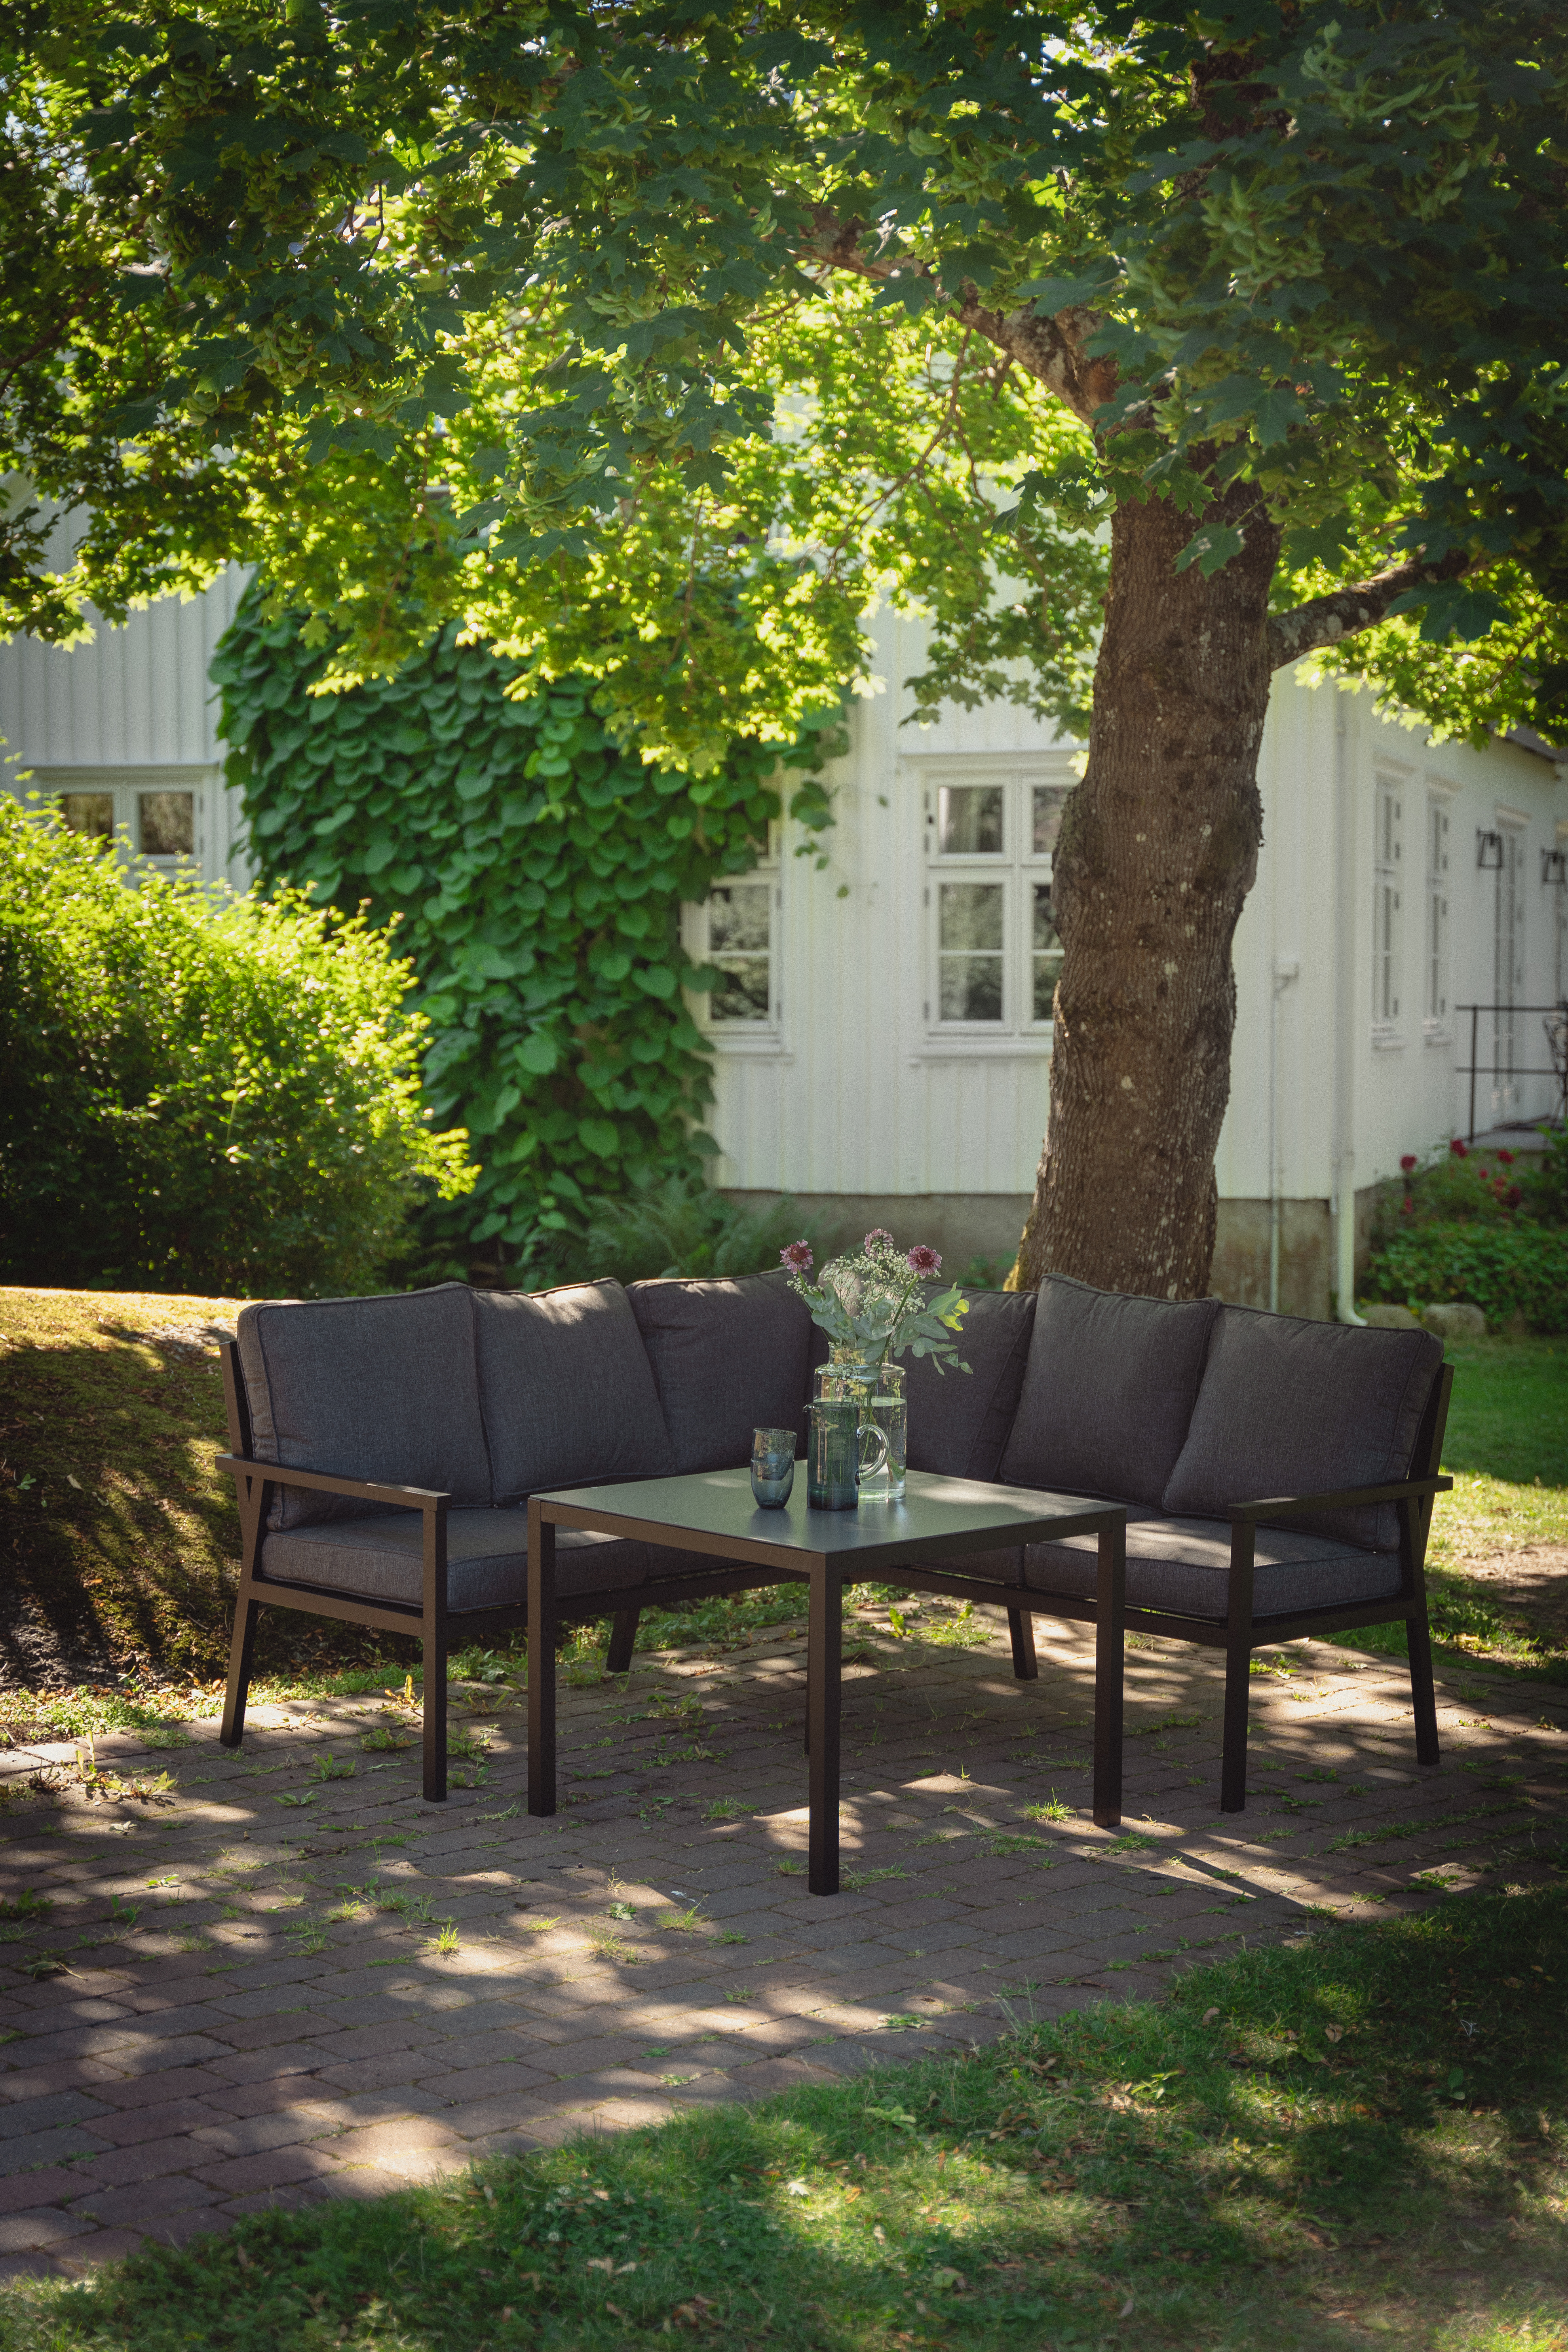 Rana sort hjørnegruppe med sofa og bord i sort aluminium.